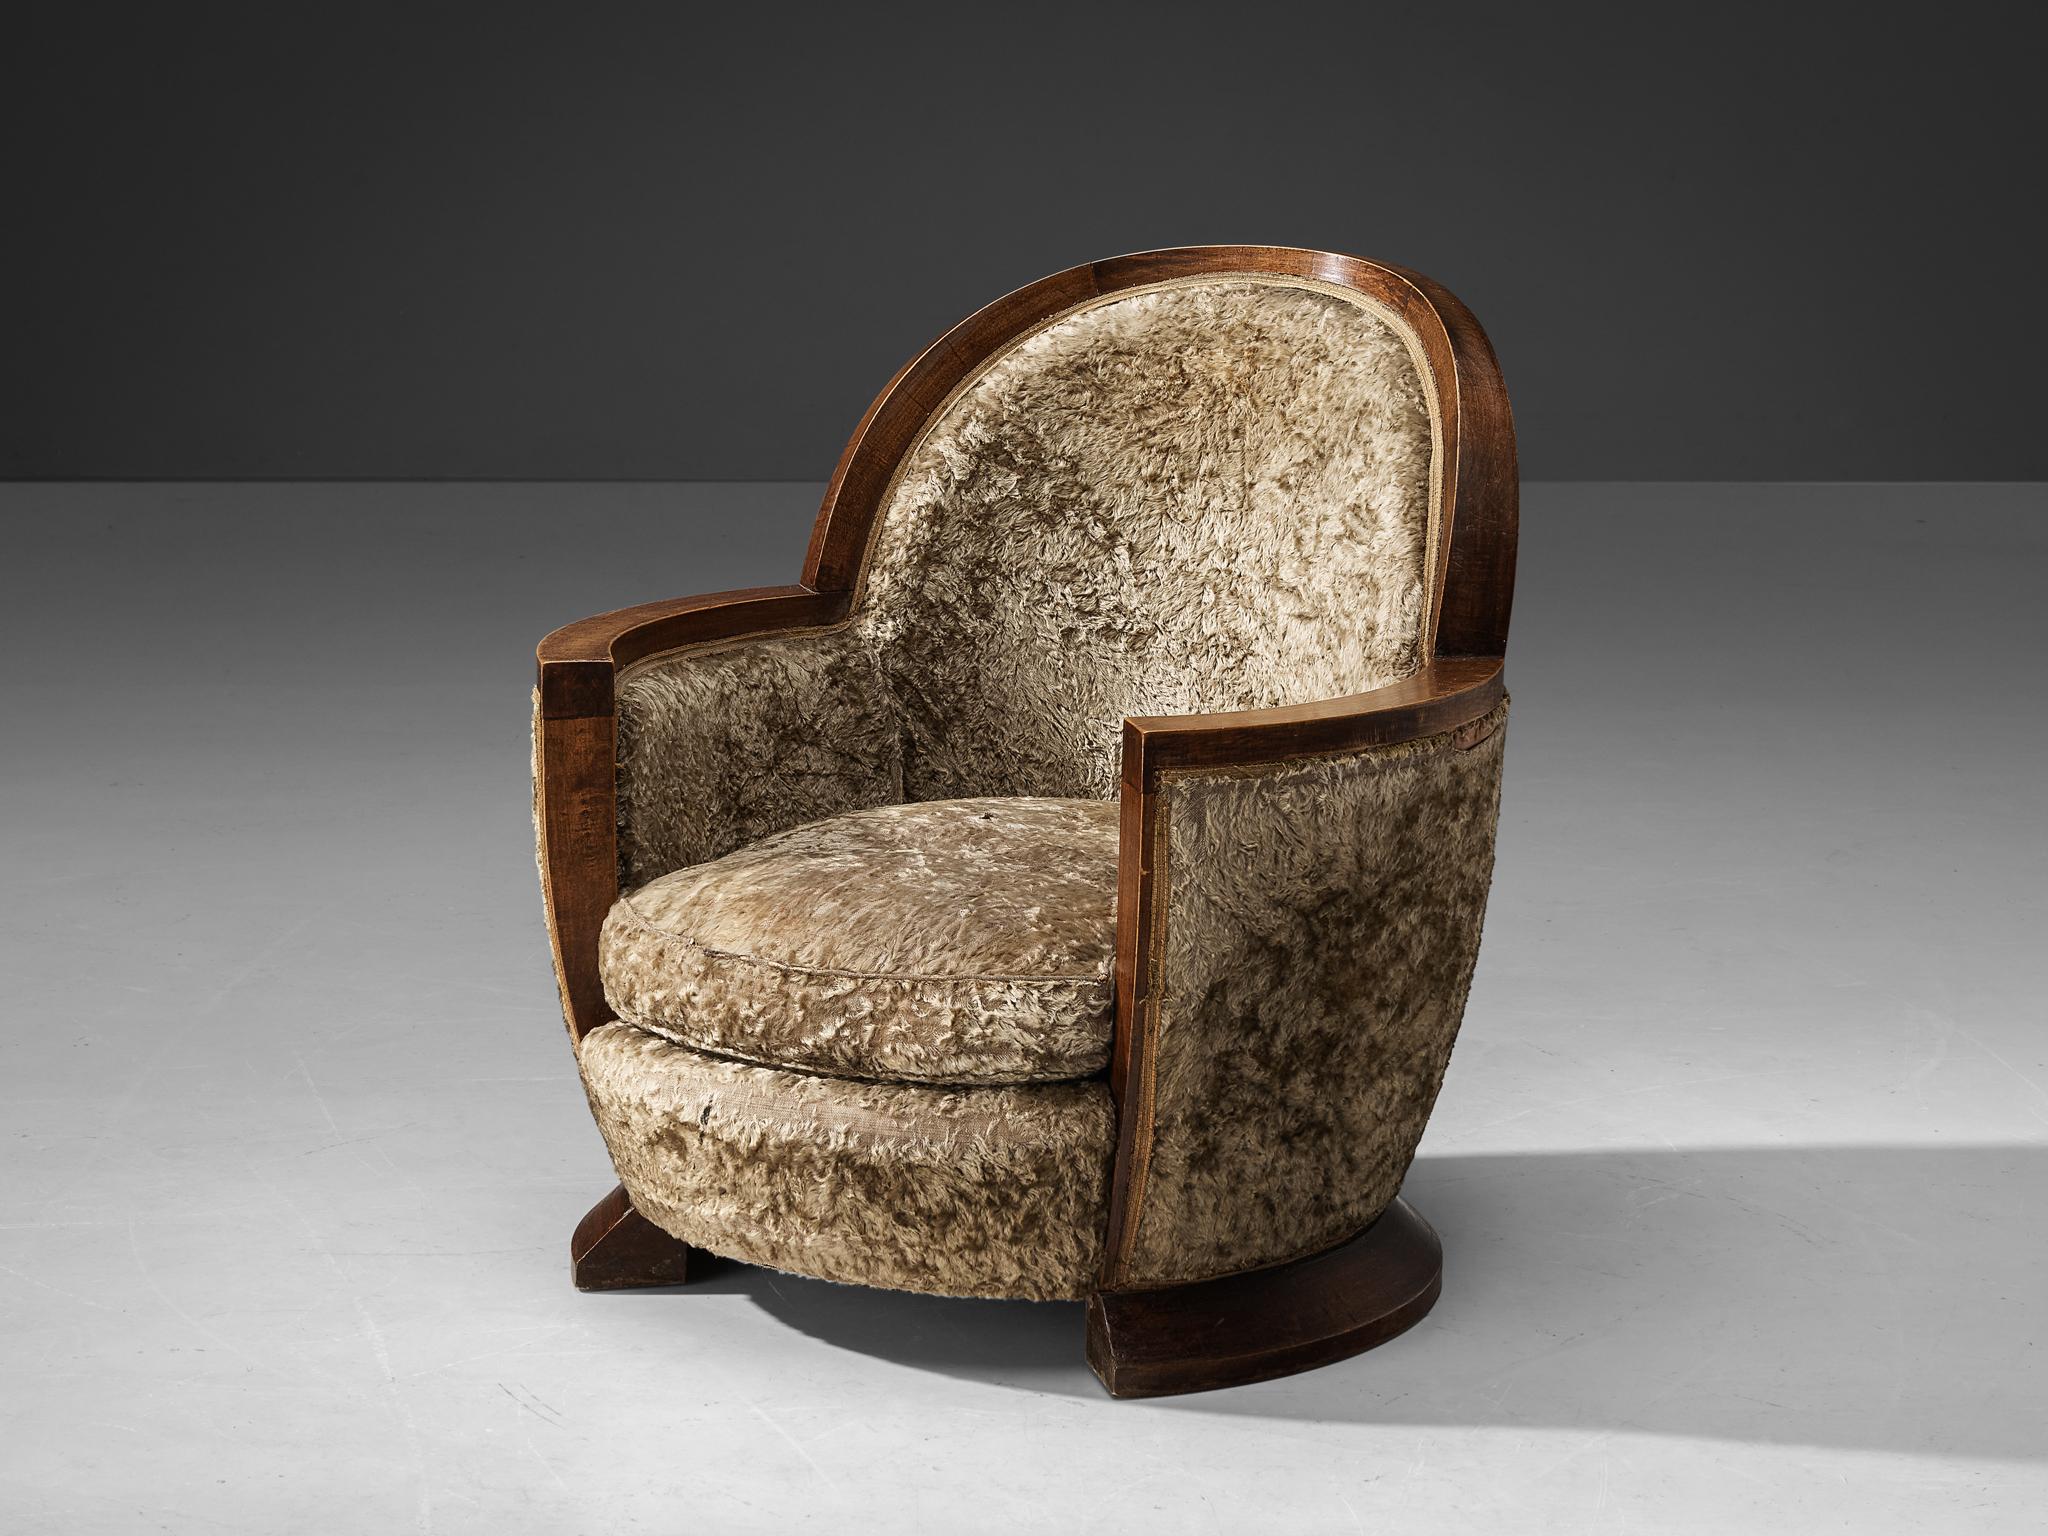 Gabriel Englinger, chaise longue, bois, revêtement en velours à poils longs, France, 1928.

Ce rare fauteuil Art déco, conçu par l'estimé designer Gabriel Englinger en 1928, incarne le luxe et la sophistication de l'époque. La chaise est recouverte